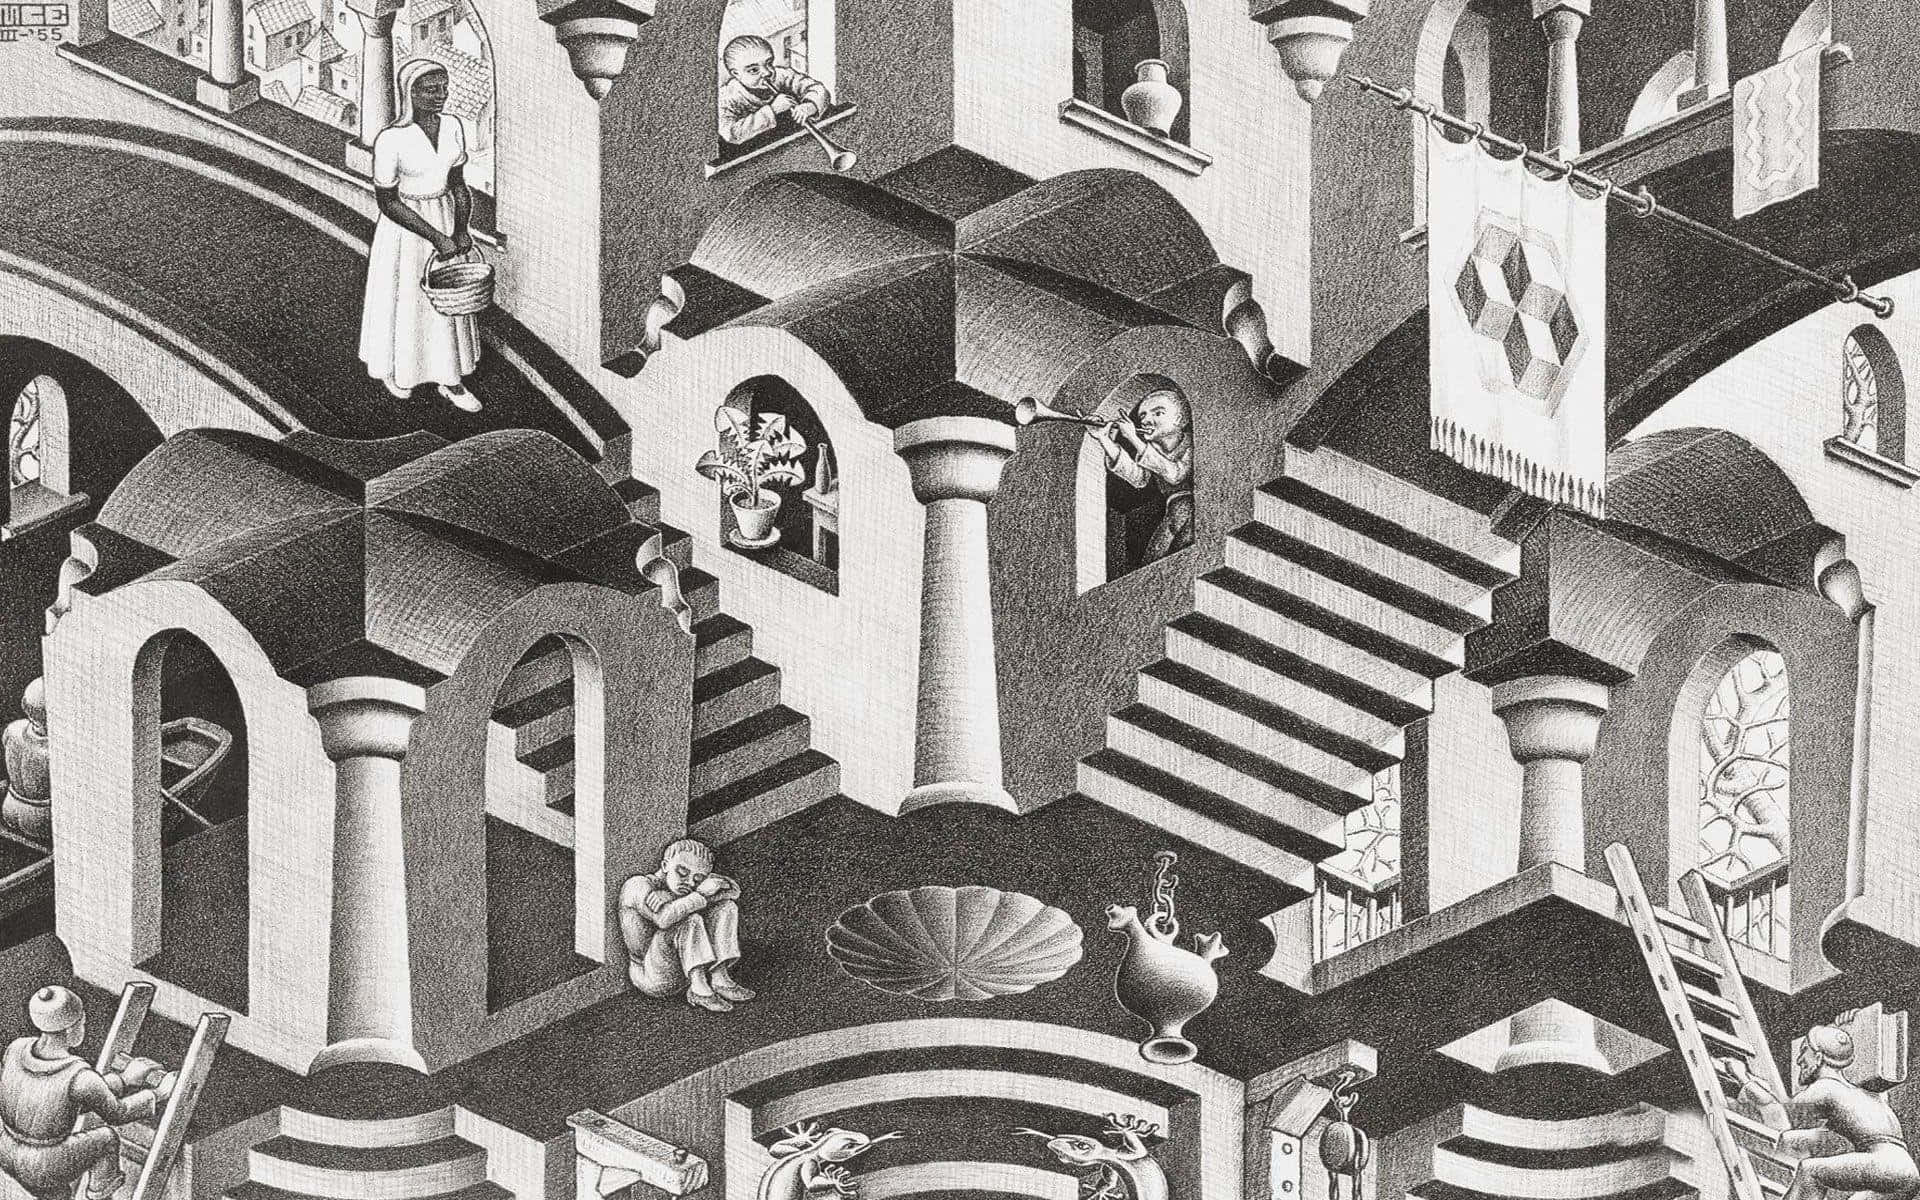 Et sort og hvid tegning af en trappe med mennesker på den. Wallpaper